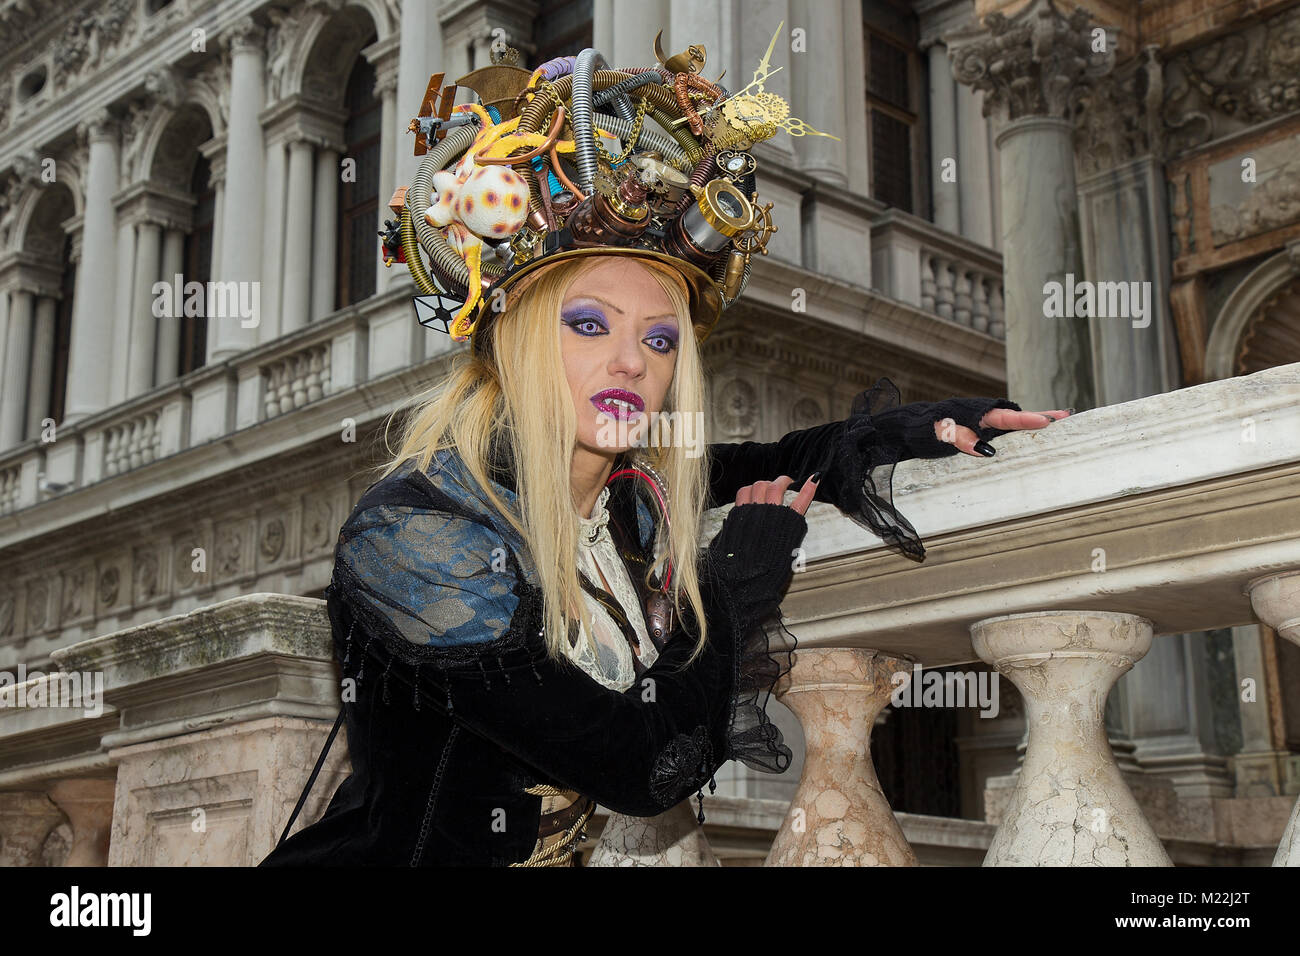 Karneval in Venedig - Vampire Portrait - Weibliche Venezianische Maske mit magischen blauen Augen, Vampir Zähne, langen blonden Haaren und einzigartige künstlerische Hut auf dem Markusplatz Stockfoto